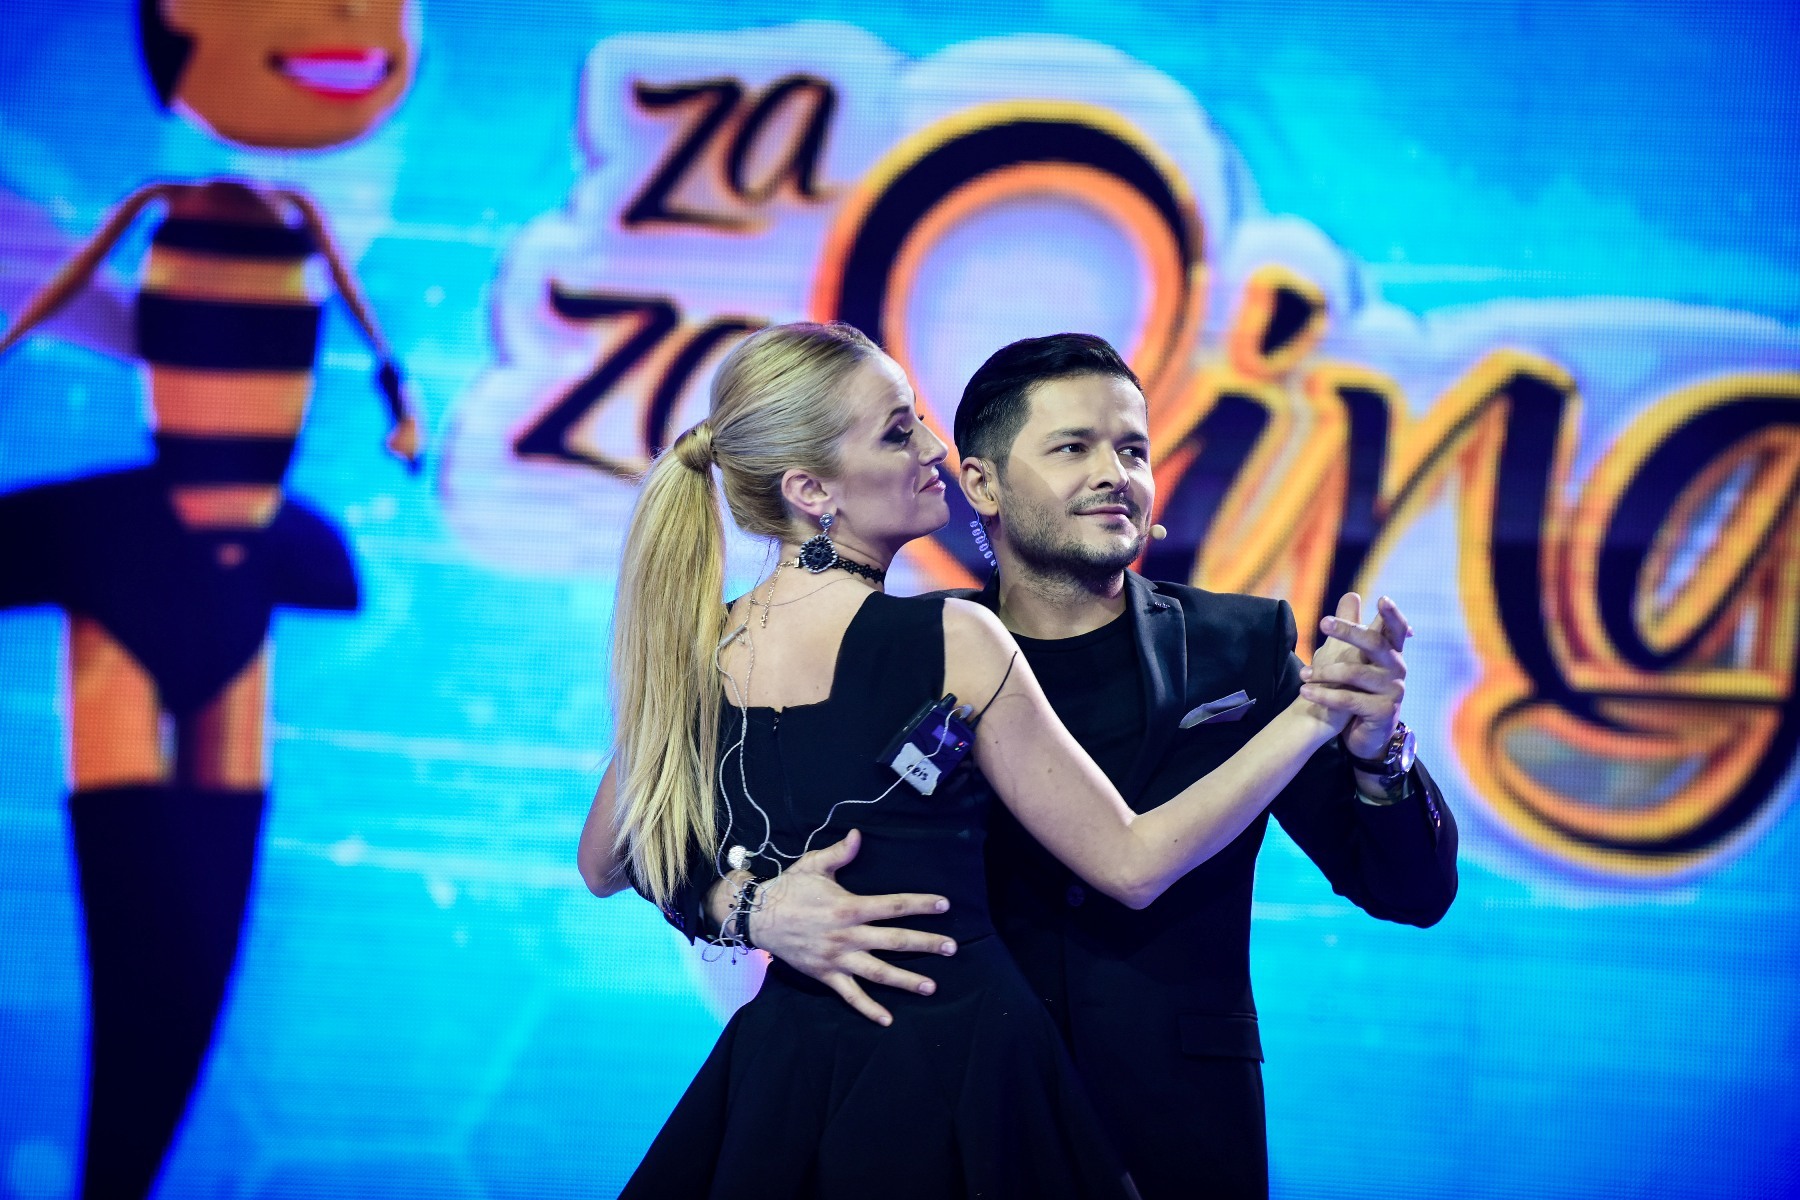 Vârciu a dansat cu o concurentă în cadrul show-ului pe care îl prezintă